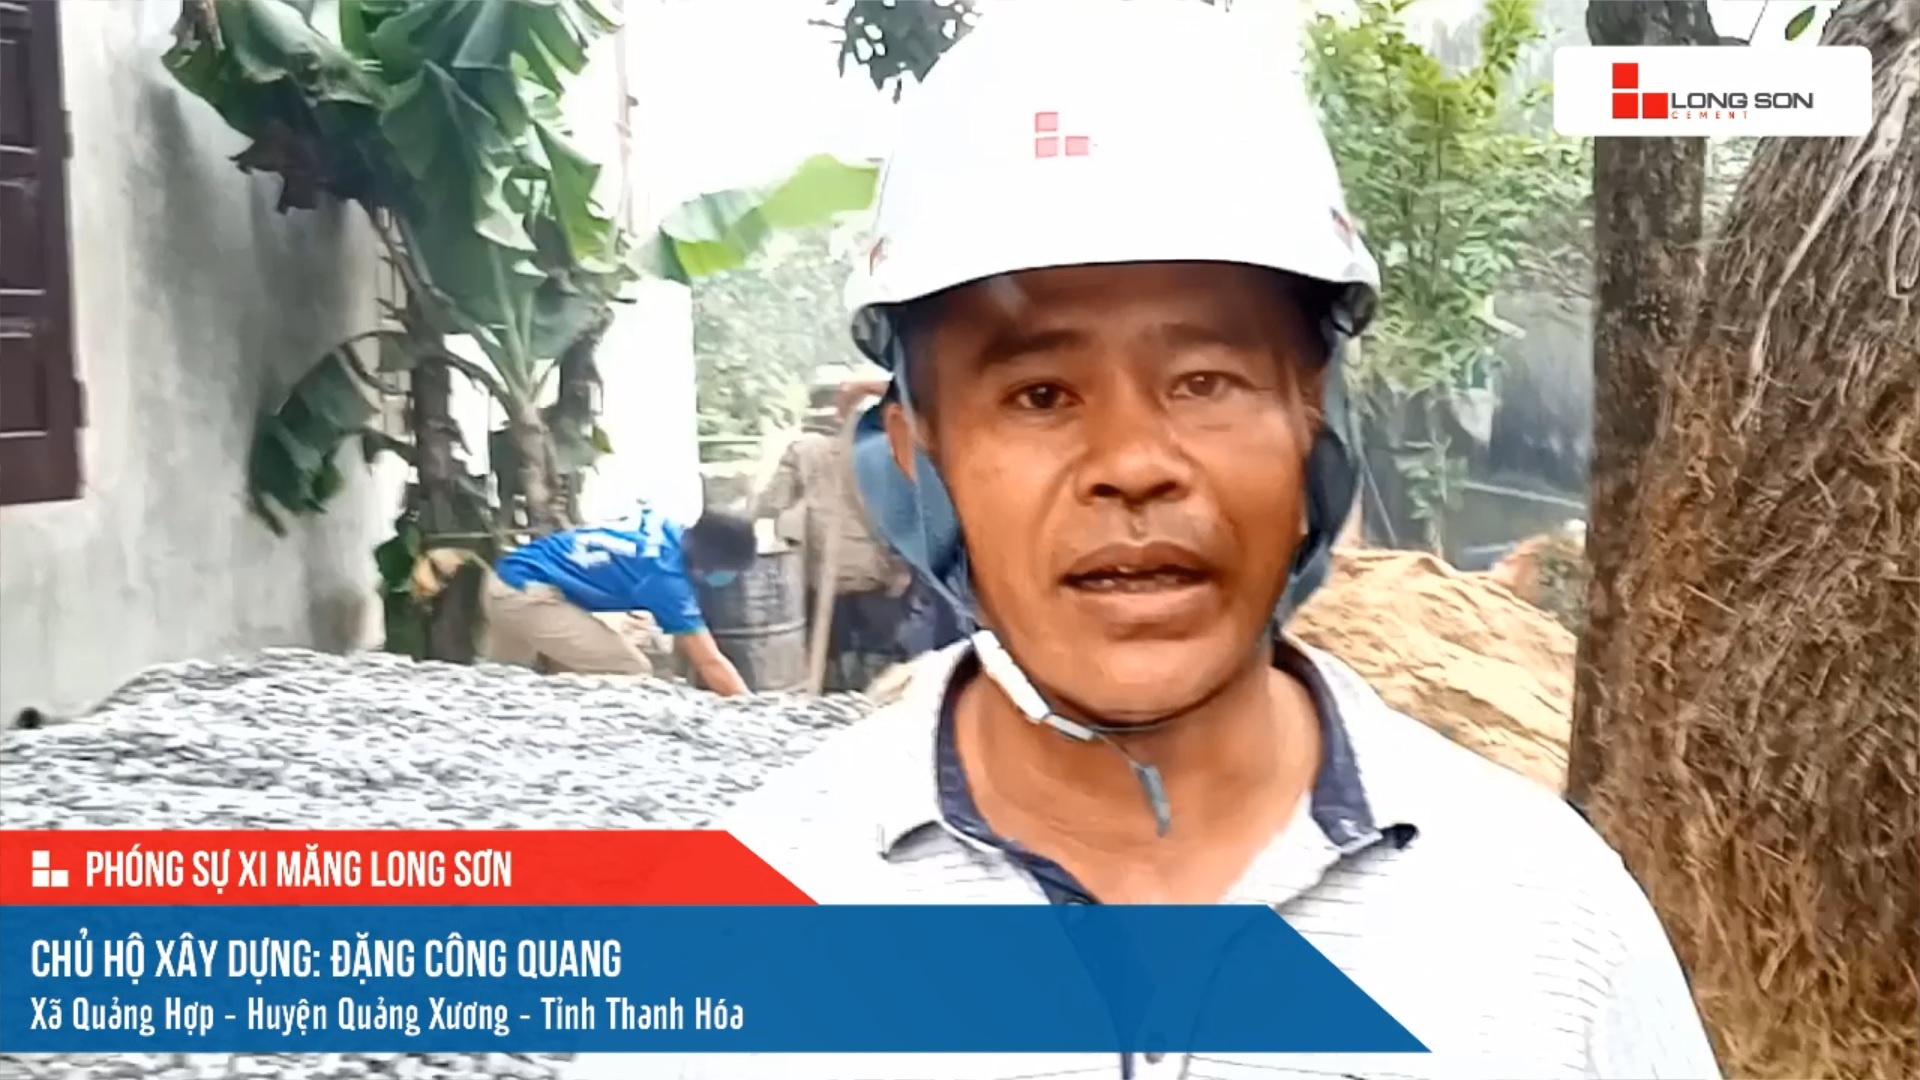 Phóng sự công trình sử dụng xi măng Long Sơn tại Thanh Hóa ngày 29/11/2021